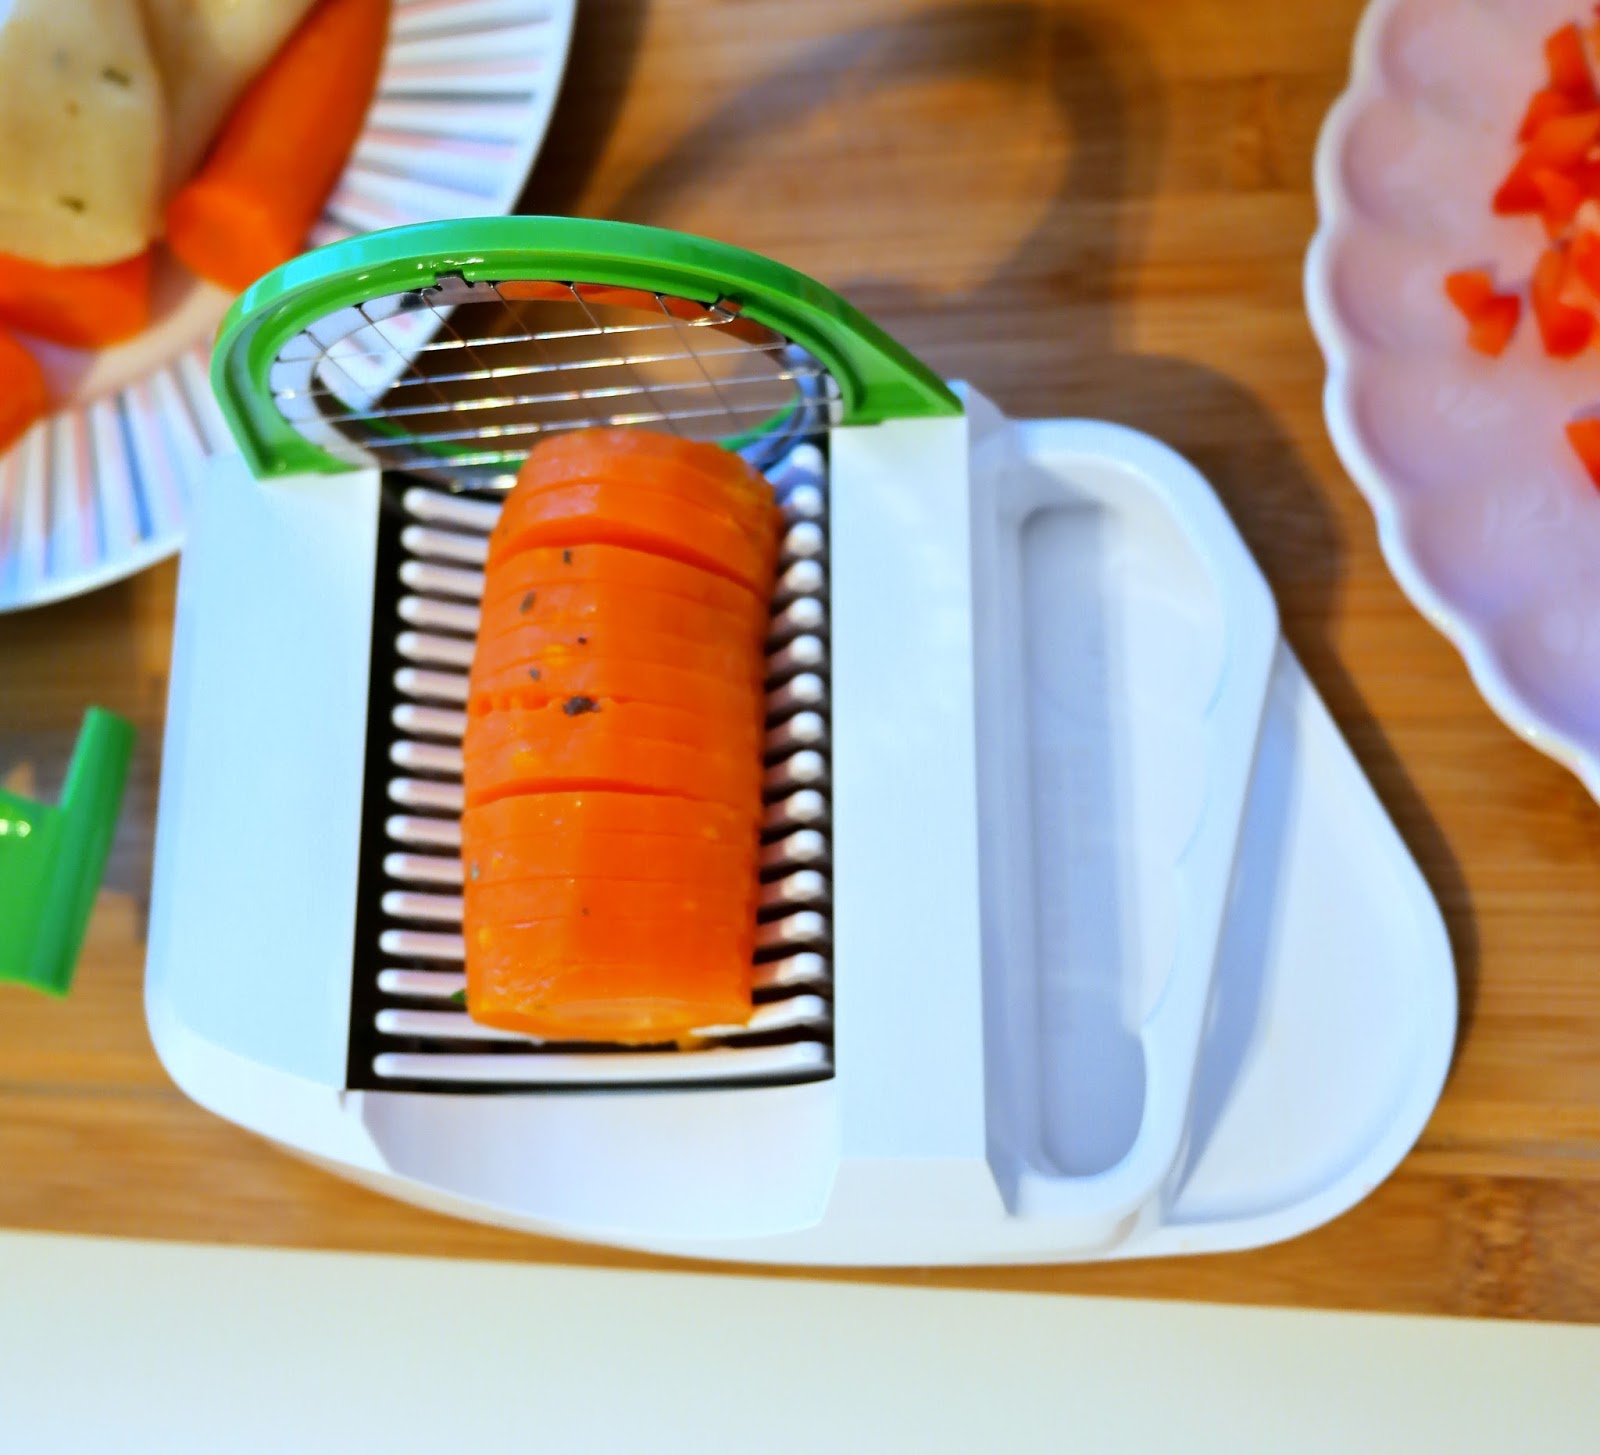 co zrobić z gotowanej marchewki